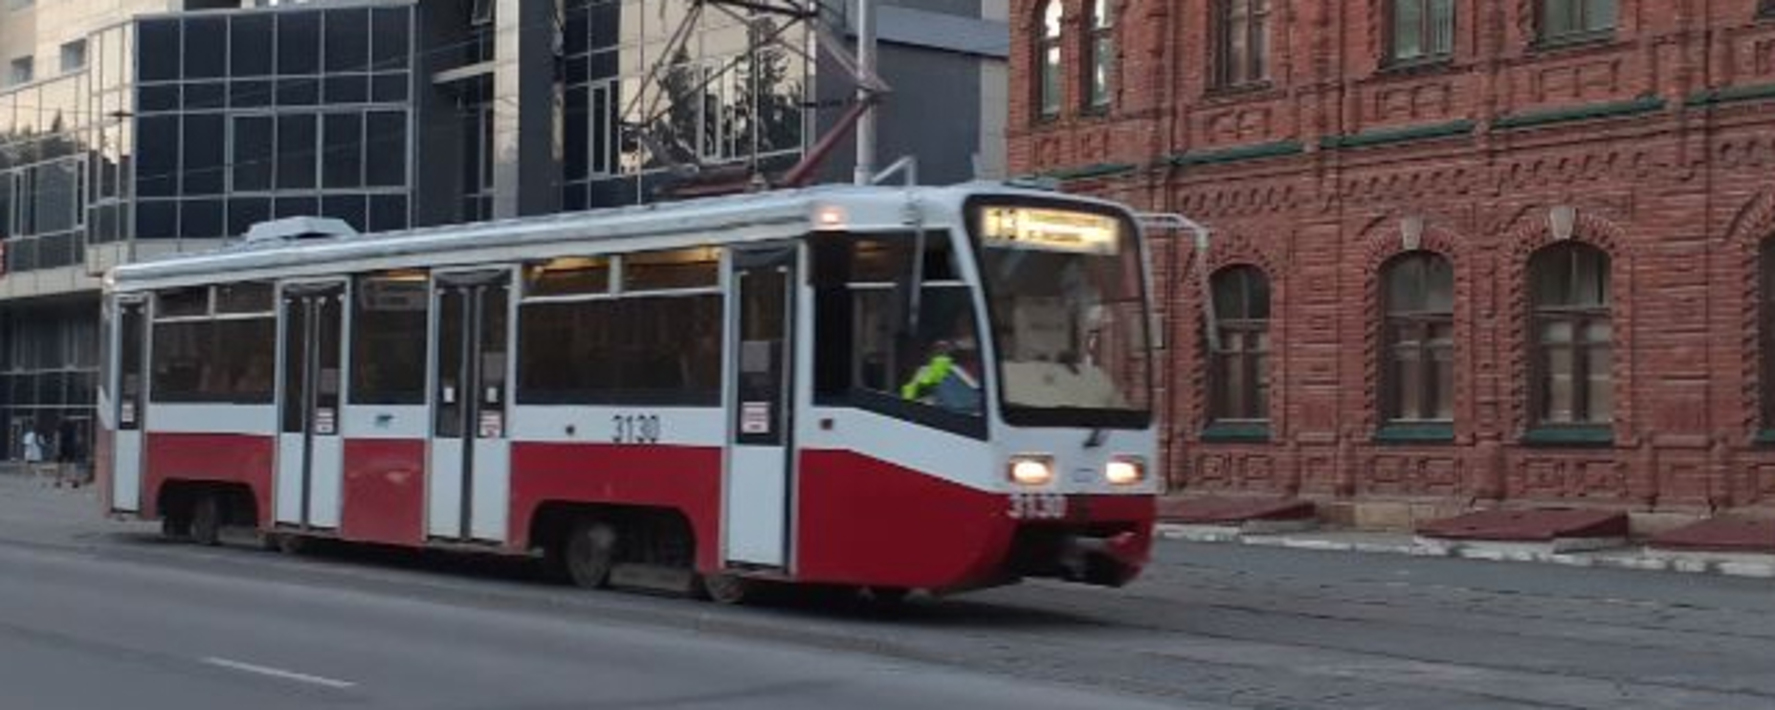 Водитель трамвая екатеринбург